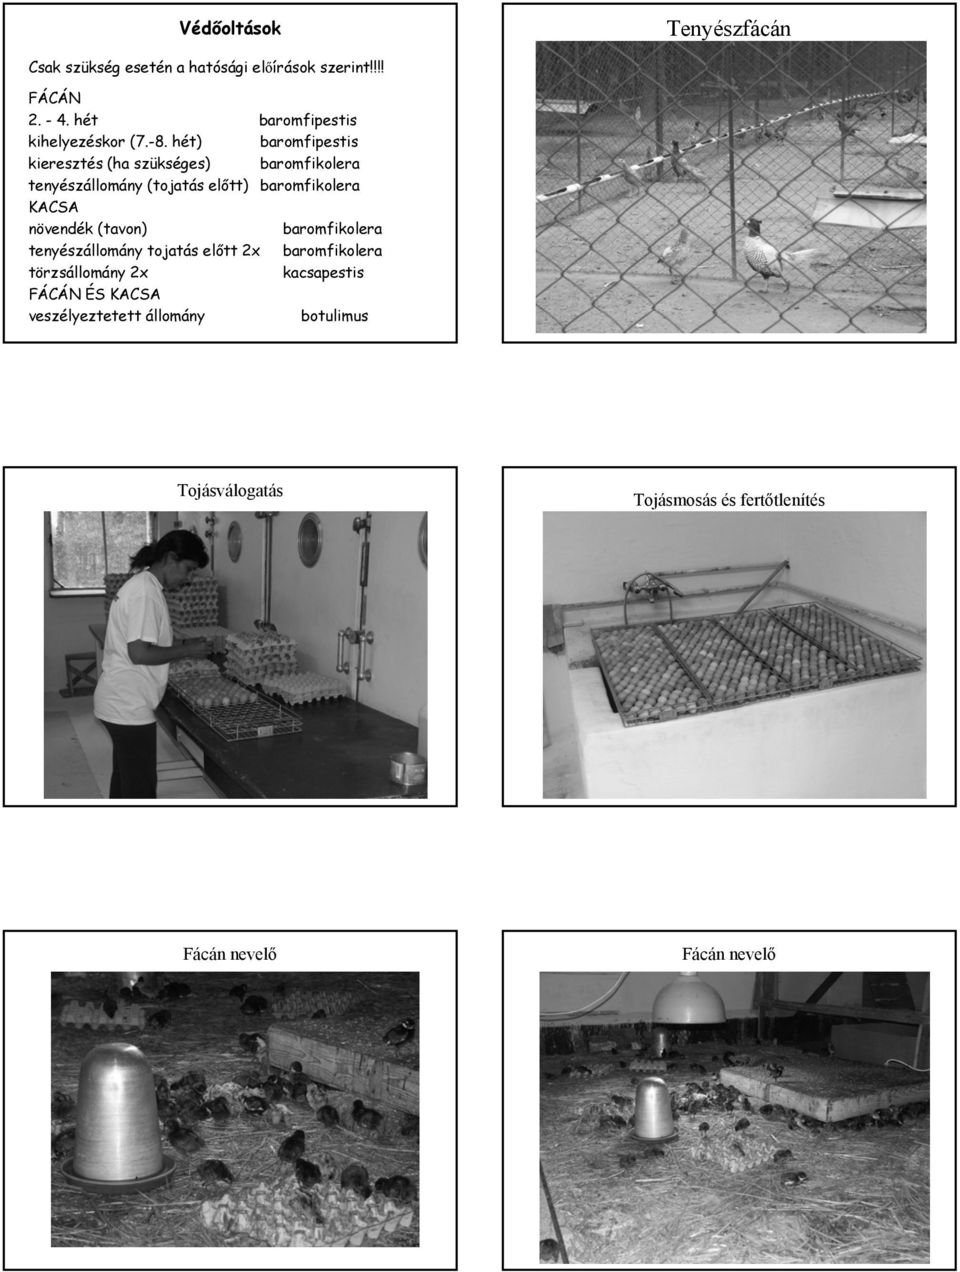 hét) baromfipestis kieresztés (ha szükséges) baromfikolera tenyészállomány (tojatás előtt) baromfikolera KACSA